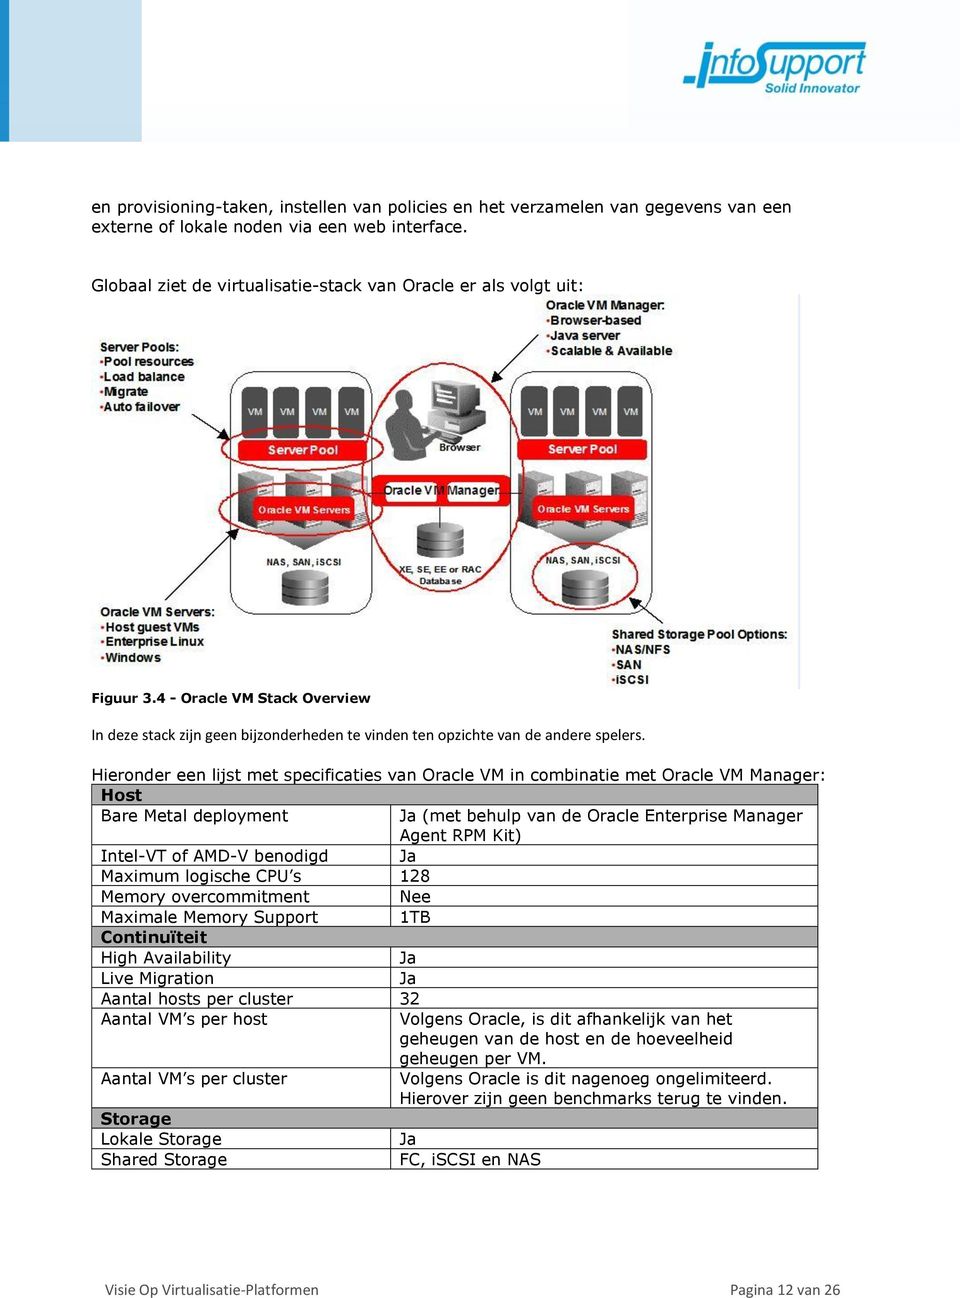 Hieronder een lijst met specificaties van Oracle VM in combinatie met Oracle VM Manager: Host Bare Metal deployment (met behulp van de Oracle Enterprise Manager Agent RPM Kit) Intel-VT of AMD-V